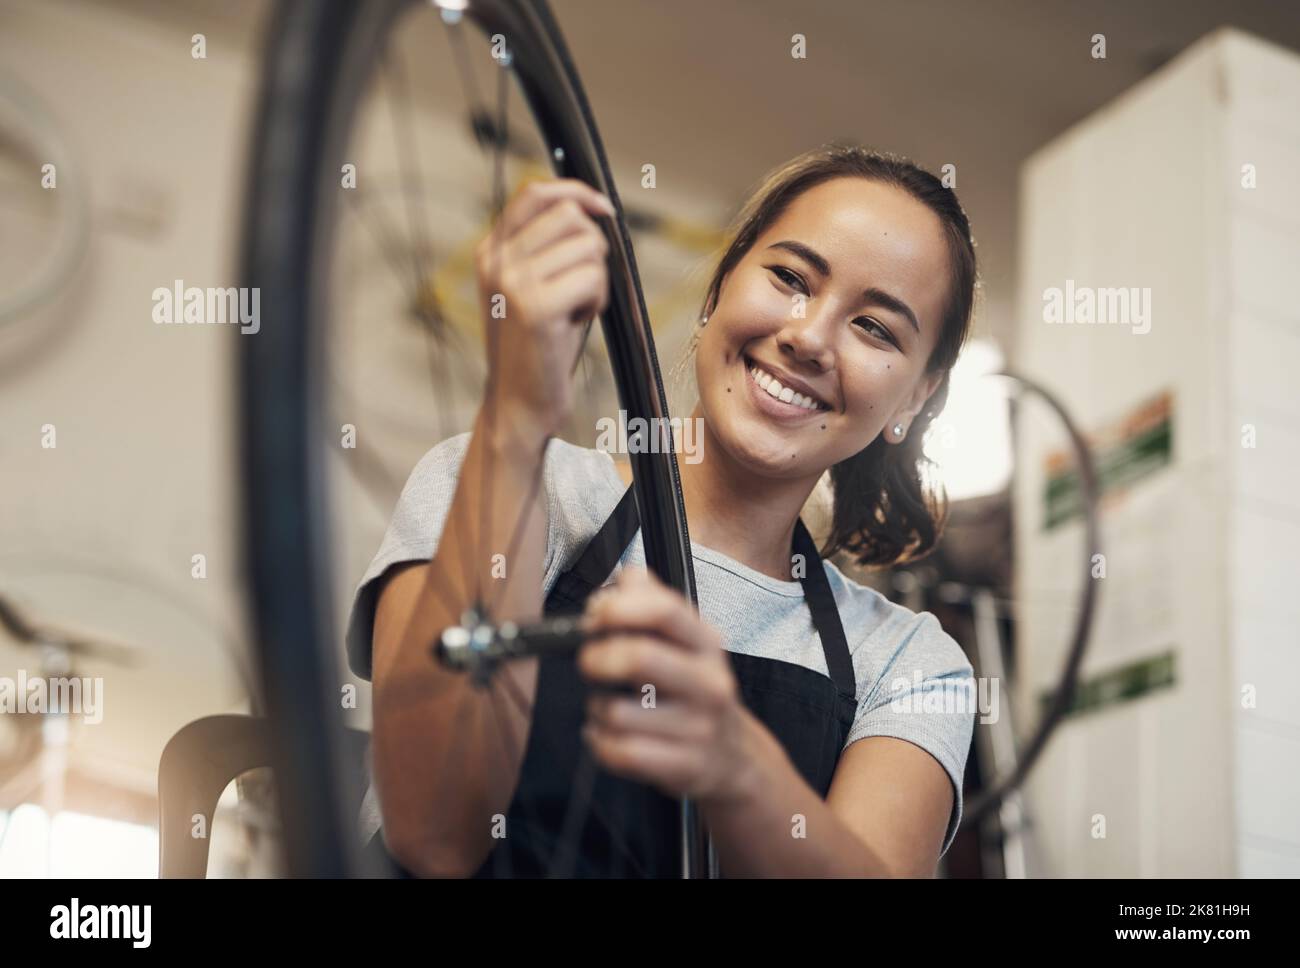 De retour du bleu, rien de nouveau. Portrait d'une jeune femme tenant une roue de vélo au travail. Banque D'Images